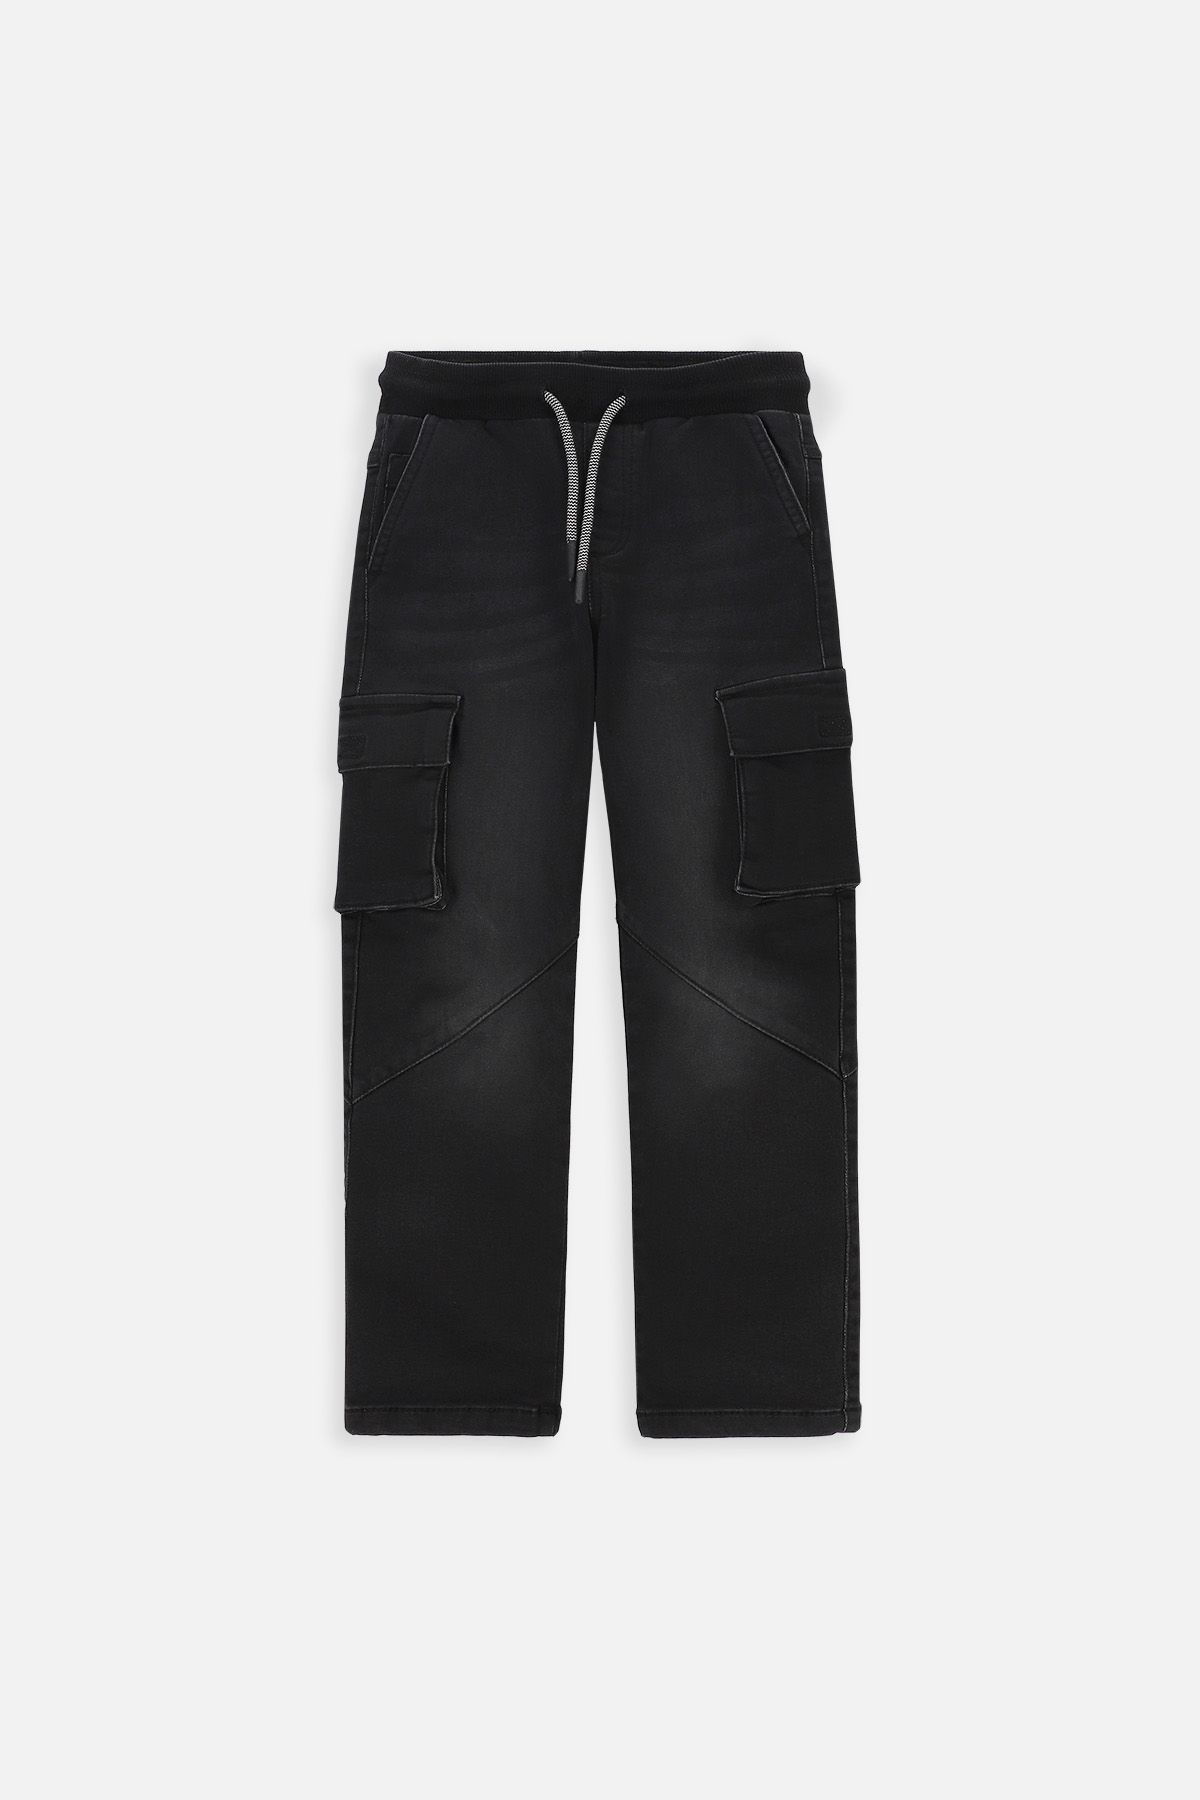 Spodnie jeansowe czarne cargo o fasonie SLIM 2222048